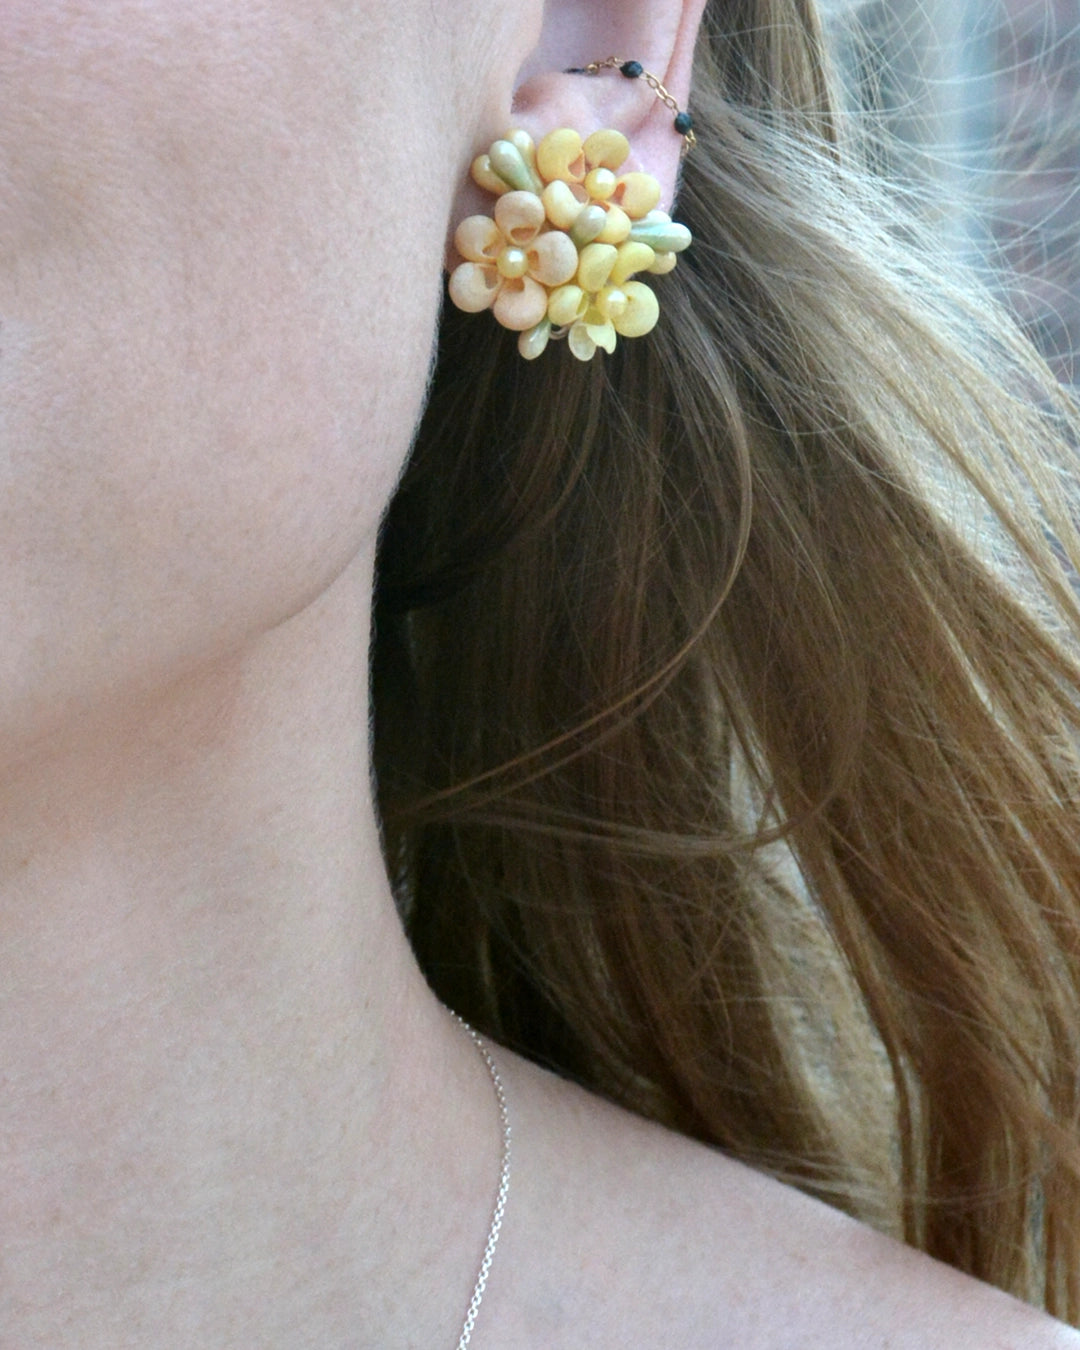 Vintage 1930s Pastel Seashell Choker Necklace + Earrings Set